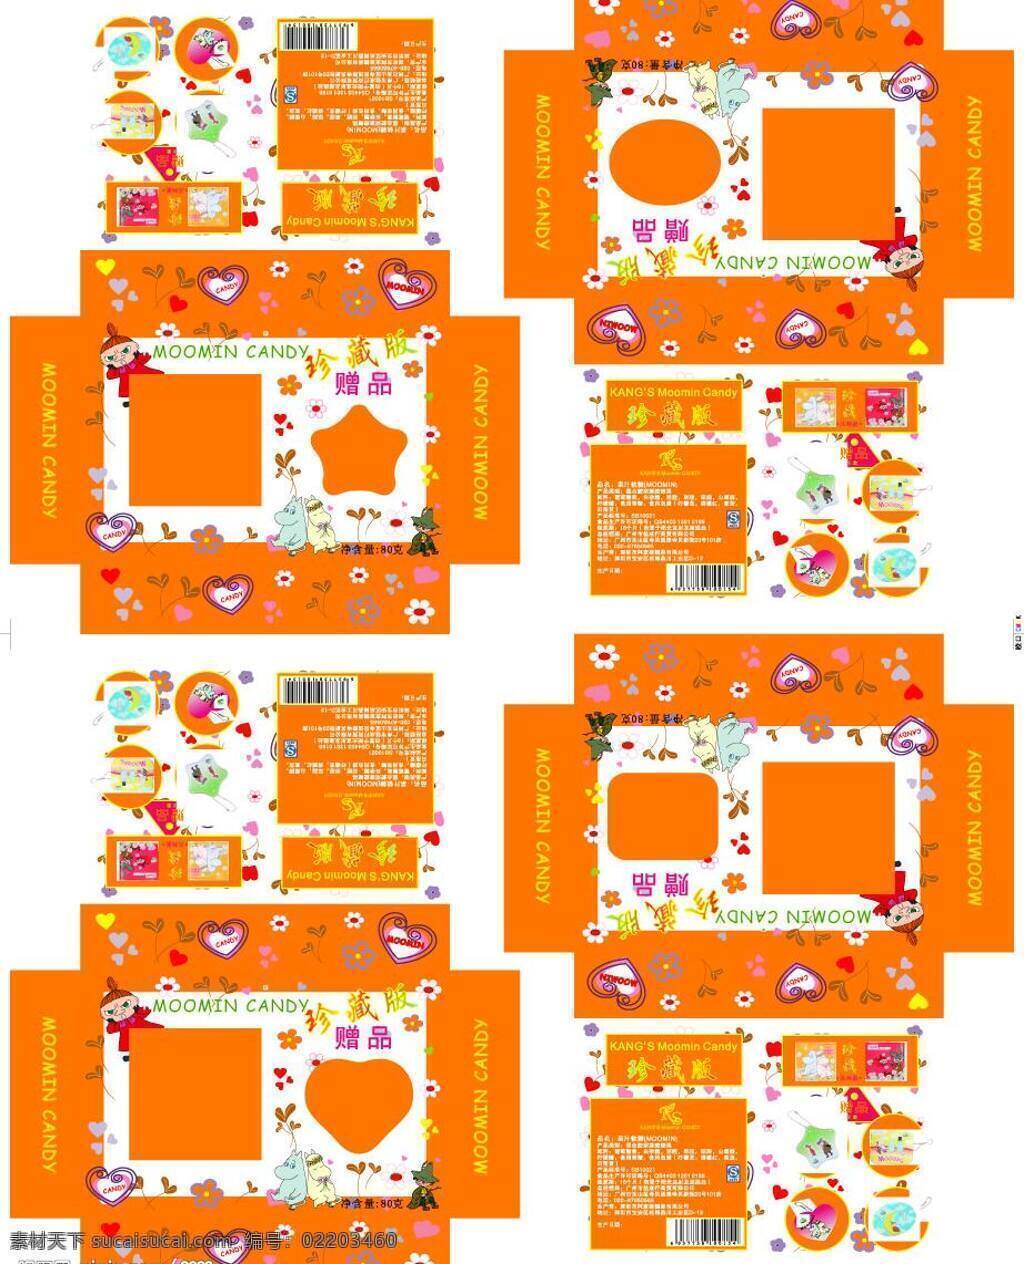 包装设计 矢量图库 四 种 明 姆 糖果 包装盒 矢量 模板下载 有卡通人物 其他矢量图